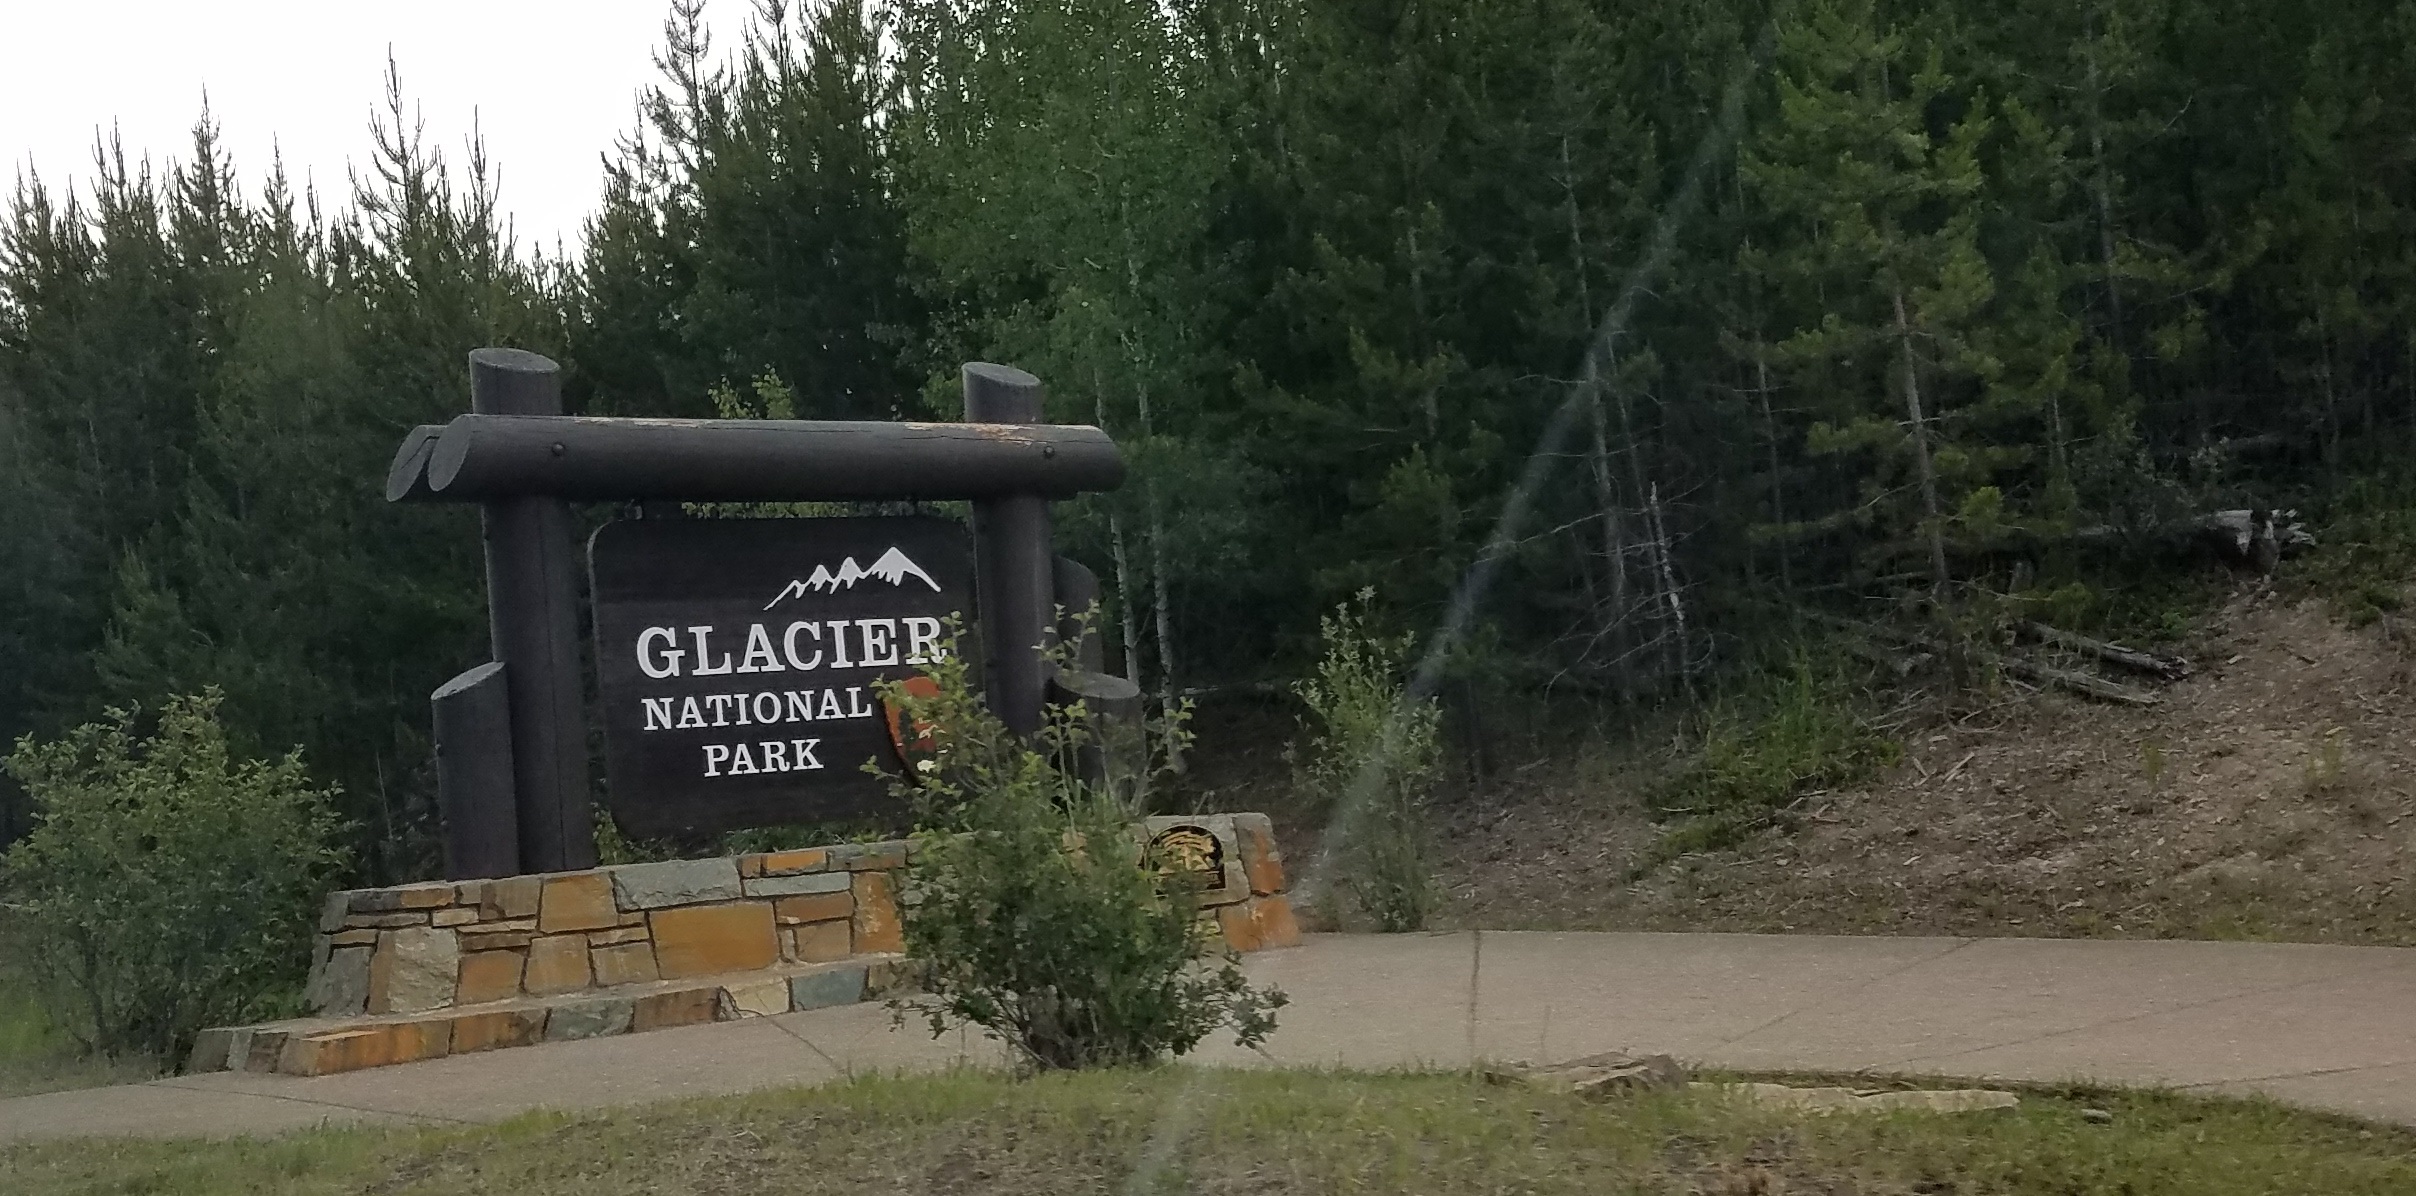 Glacier-National-Park-sign